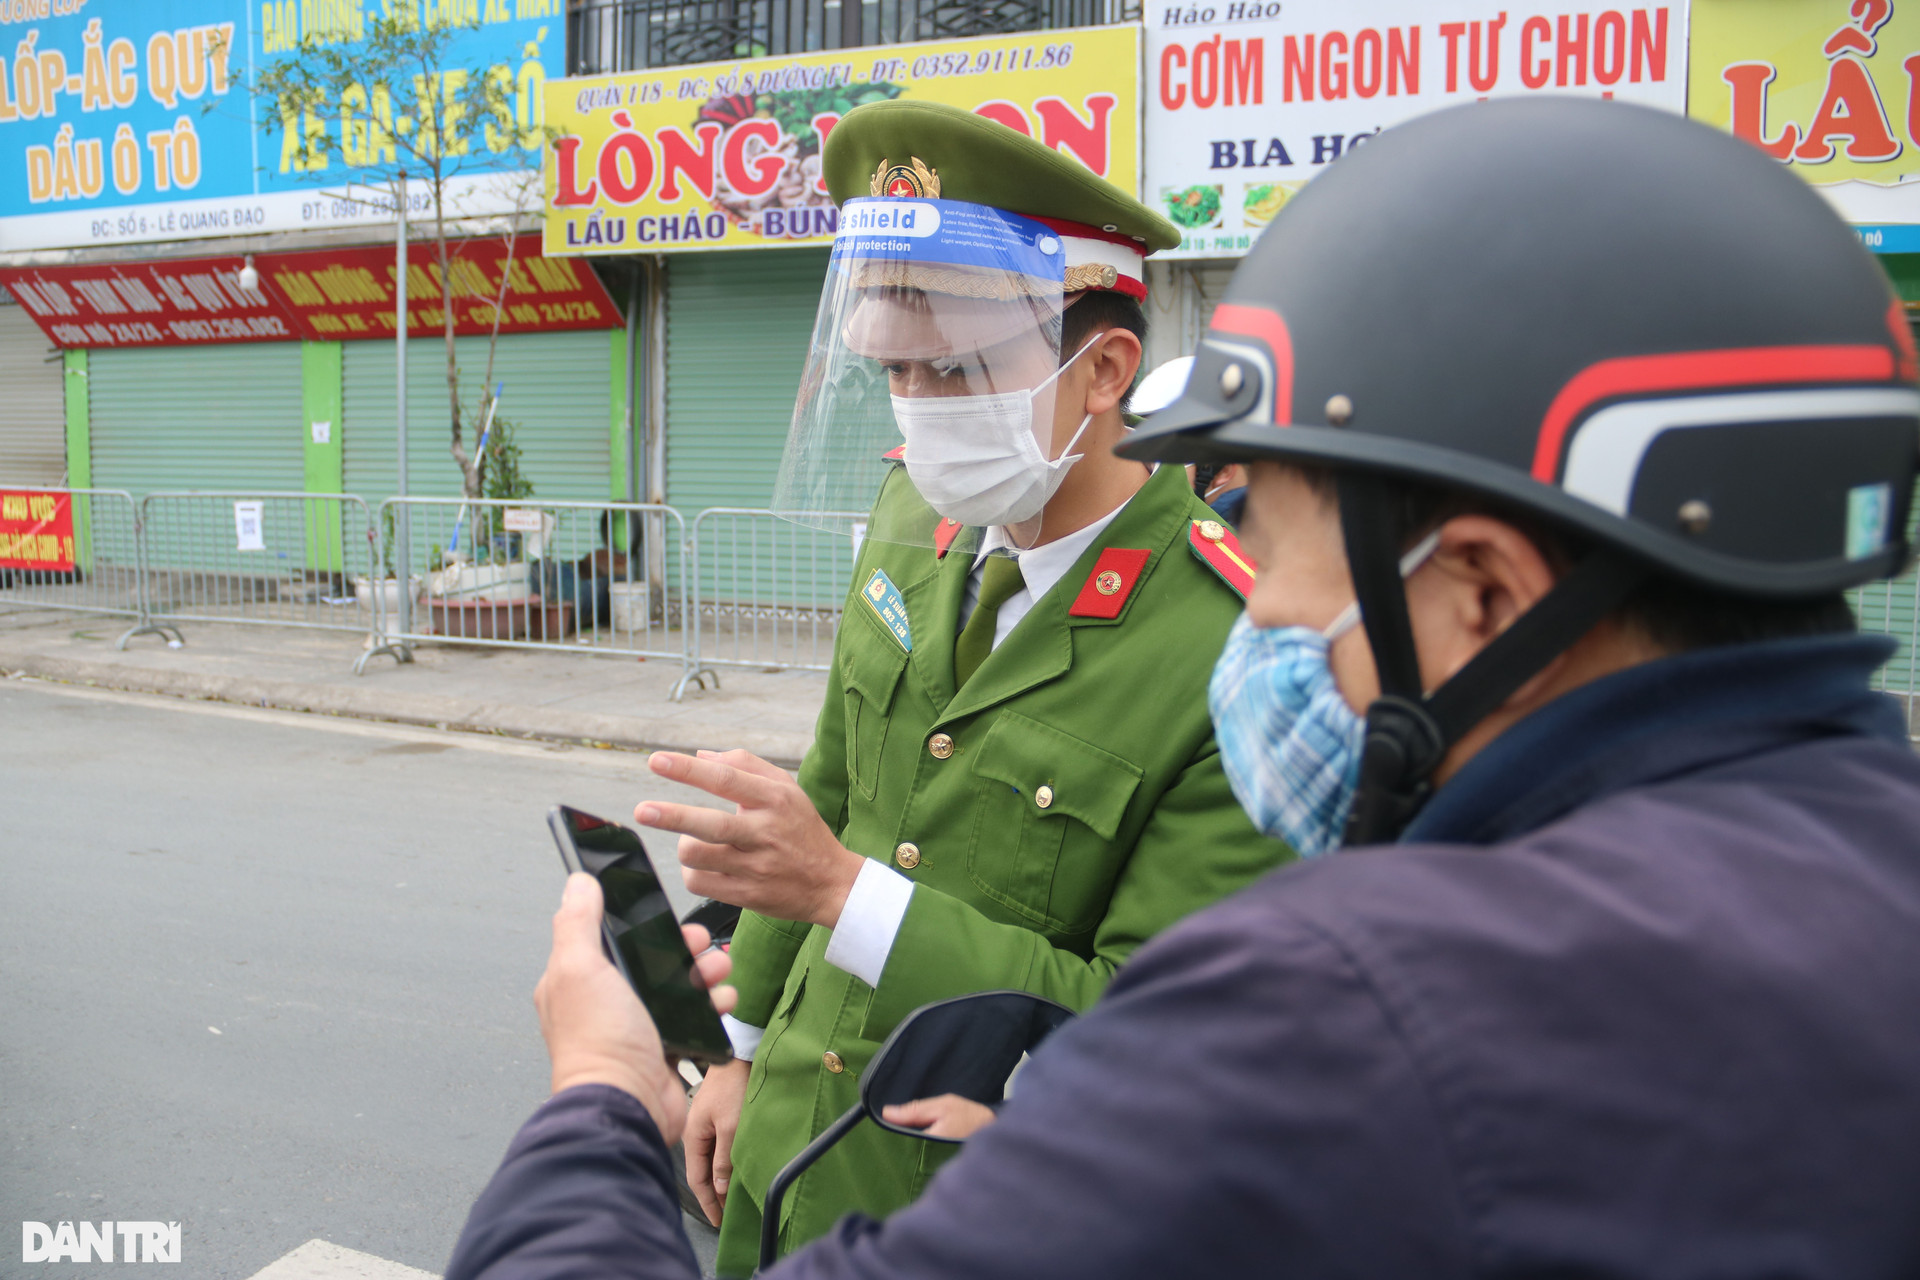 Hà Nội: Đông nghịt người quét QR Code tại ổ dịch Phú Đô để ra vào phường - 13